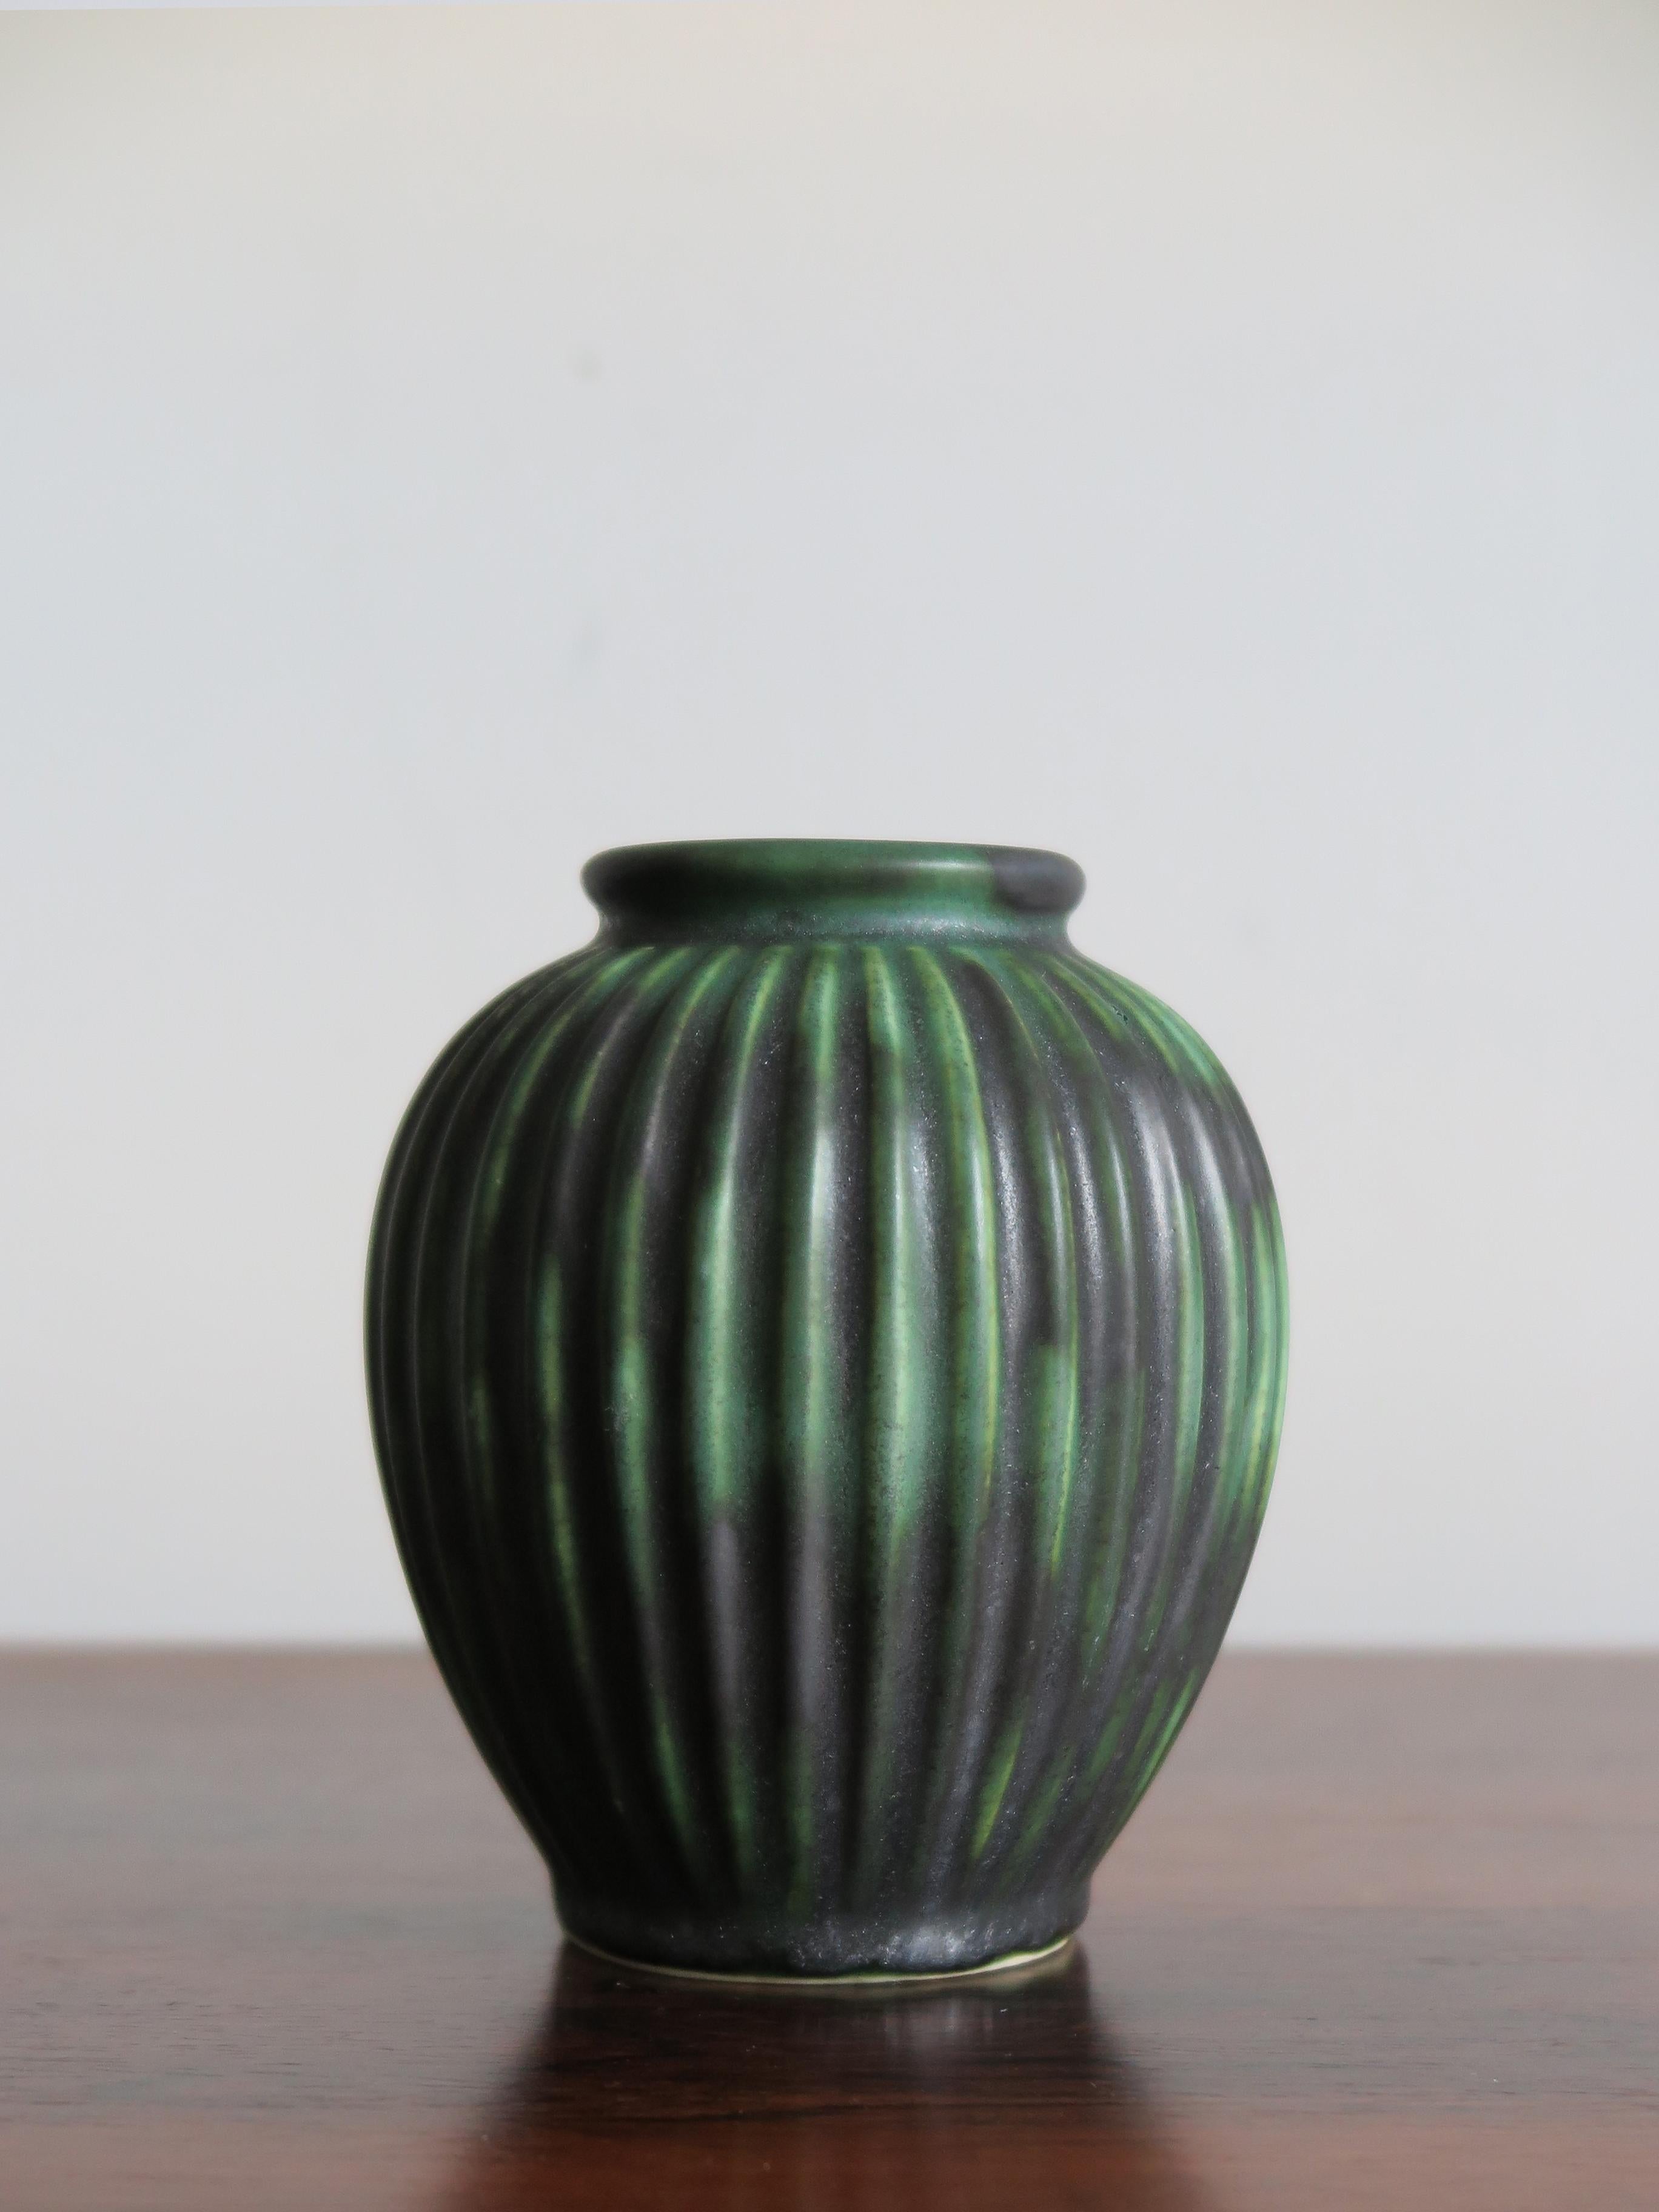 Scandinavian Modern Michael Andersen Scandinavian Mid-Century Modern Green Ceramic Vases, 1940s For Sale